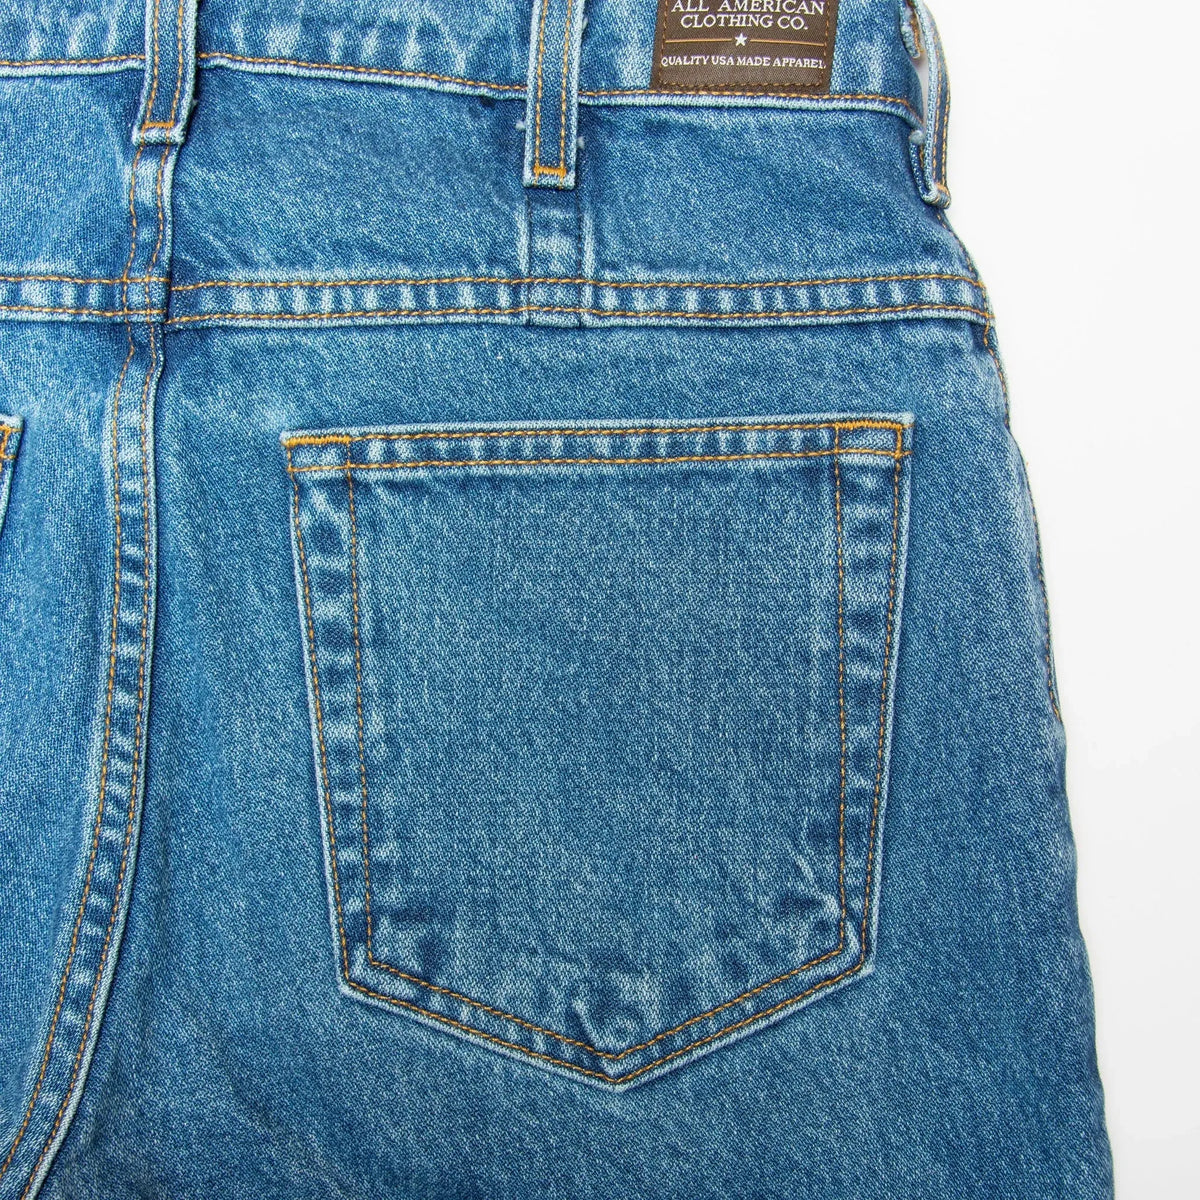 Details 190+ about denim jeans company